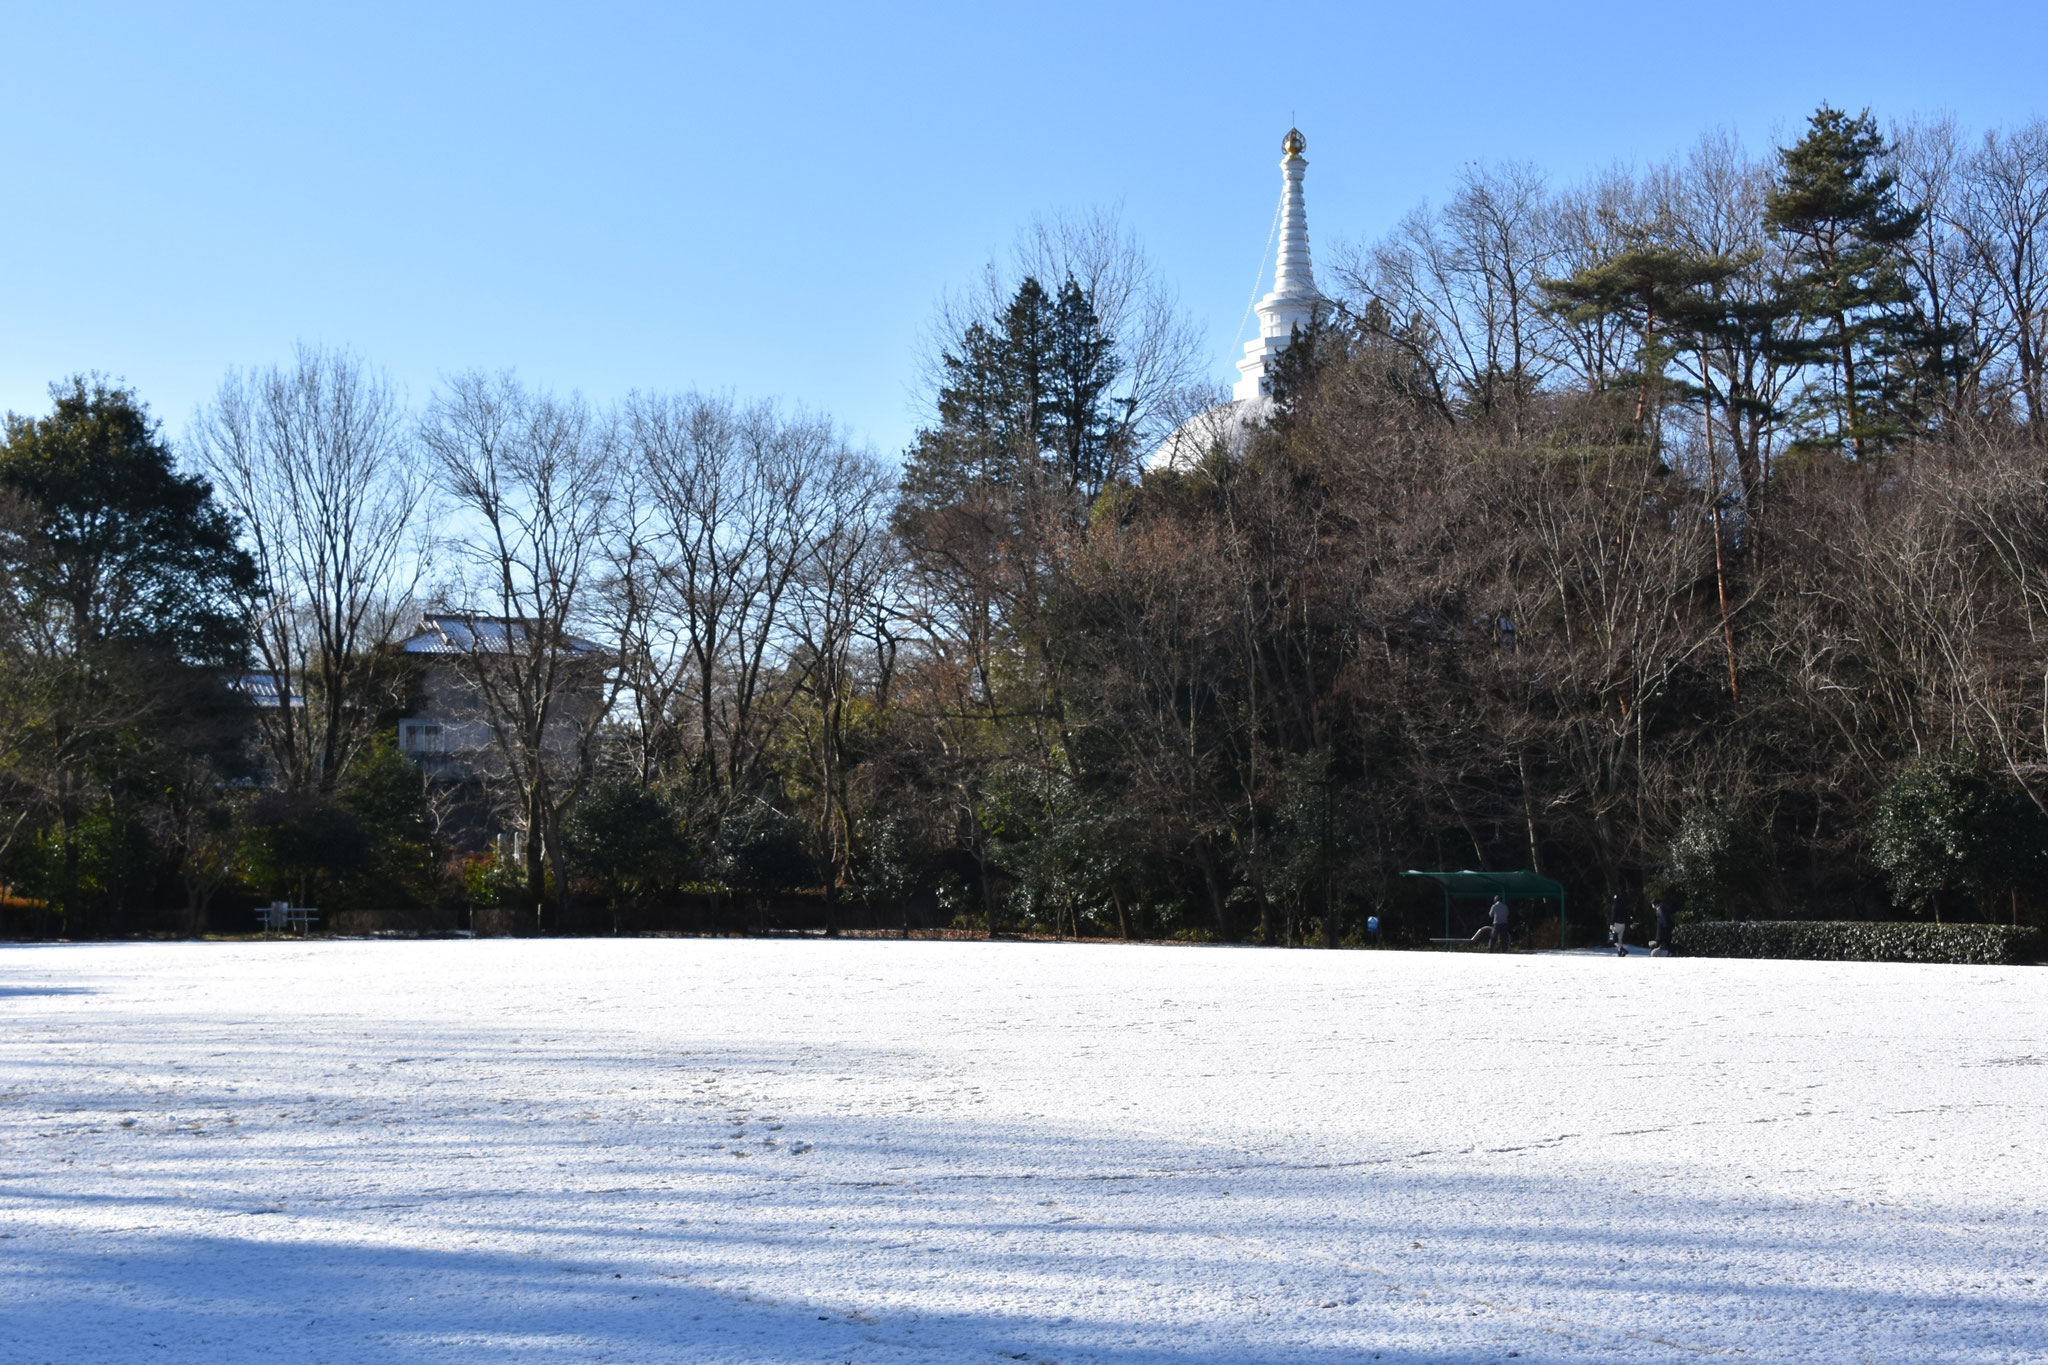 仏舎利塔と雪原のコラボレーション